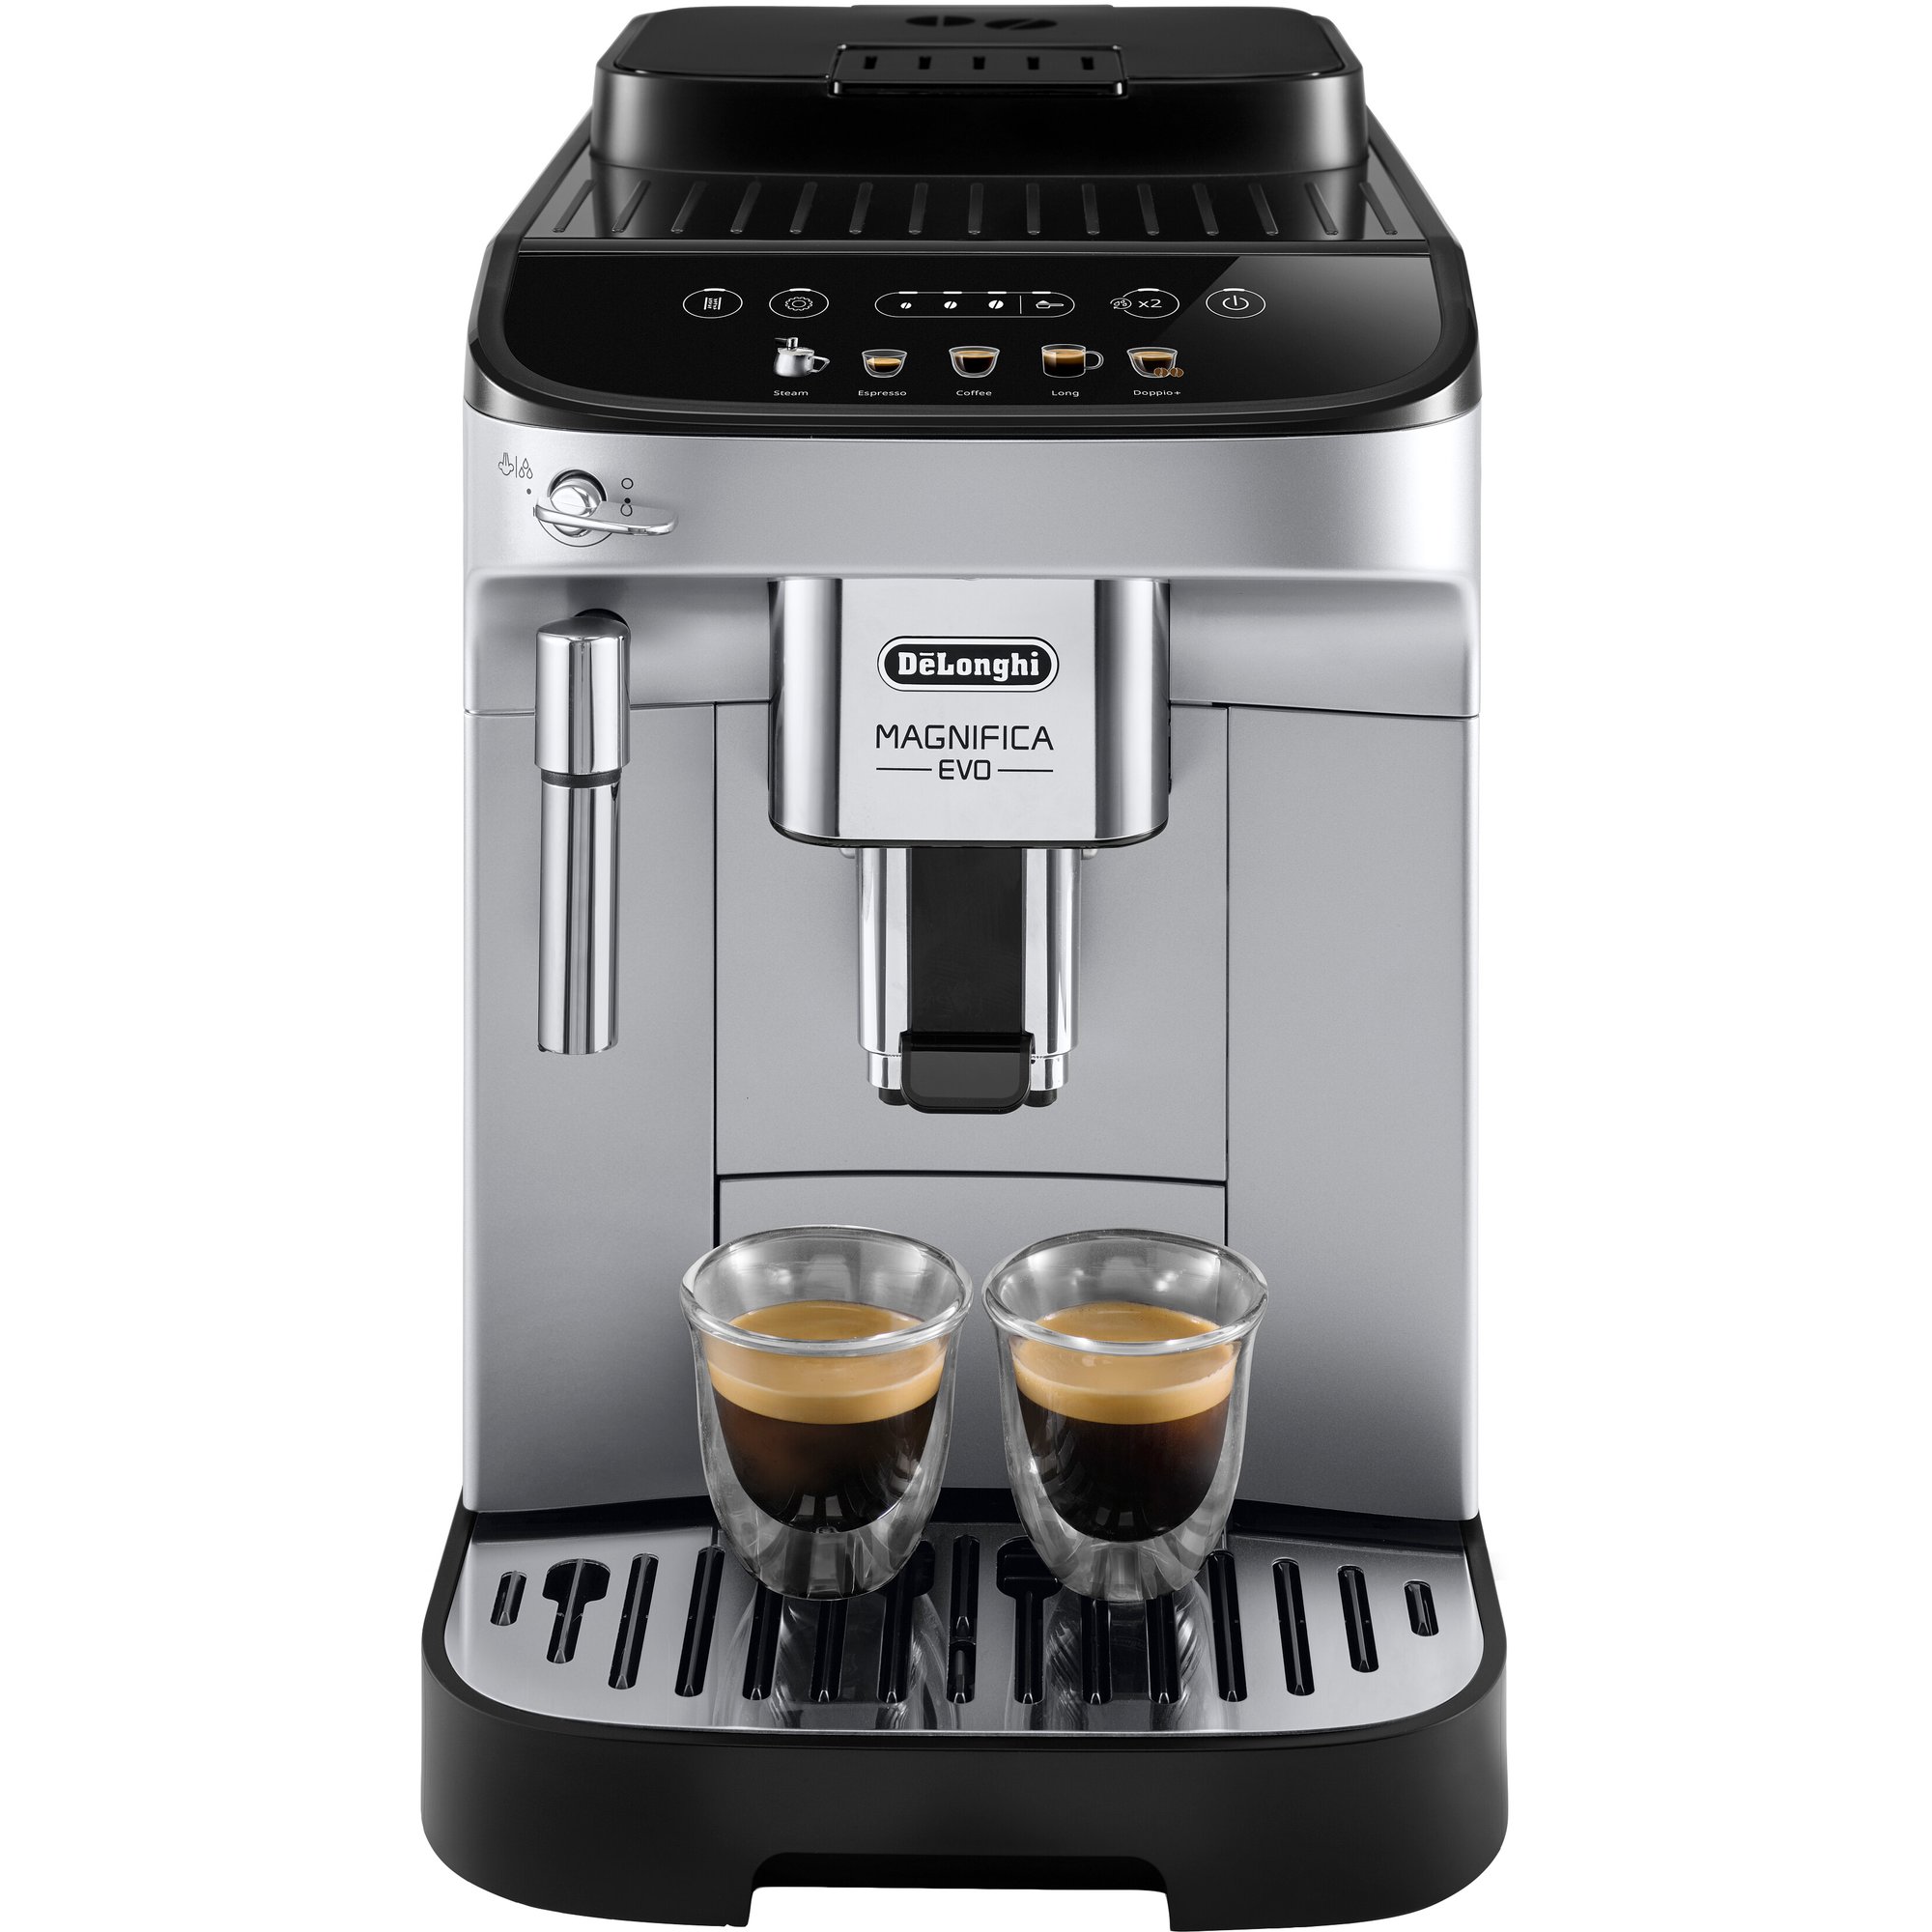 DeLonghi ECAM290.31 Magnifica Evo espressomaskine, 5 hurtige opskrifter